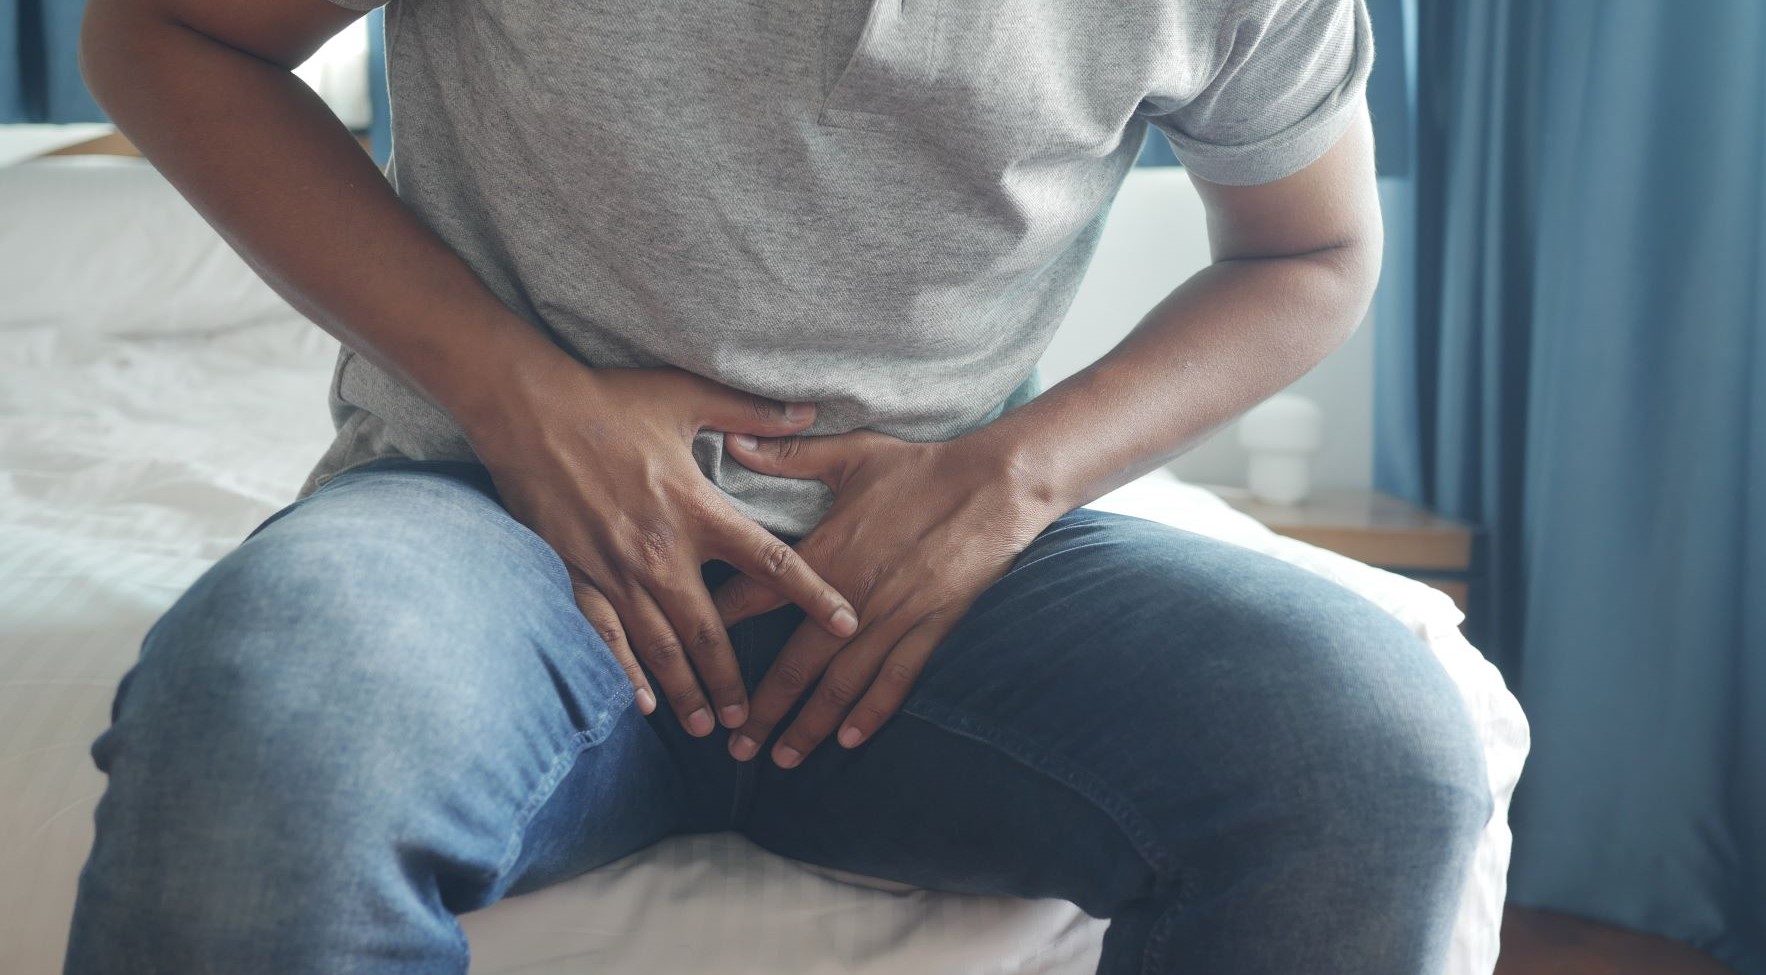 Prostataerkrankungen und Prostataoperationen haben häufig Harninkontinenz und Potenzstörungen zur Folge. In beiden Fällen kann präoperative und postoperative Physiotherapie und Beckenbodentherapie helfen.